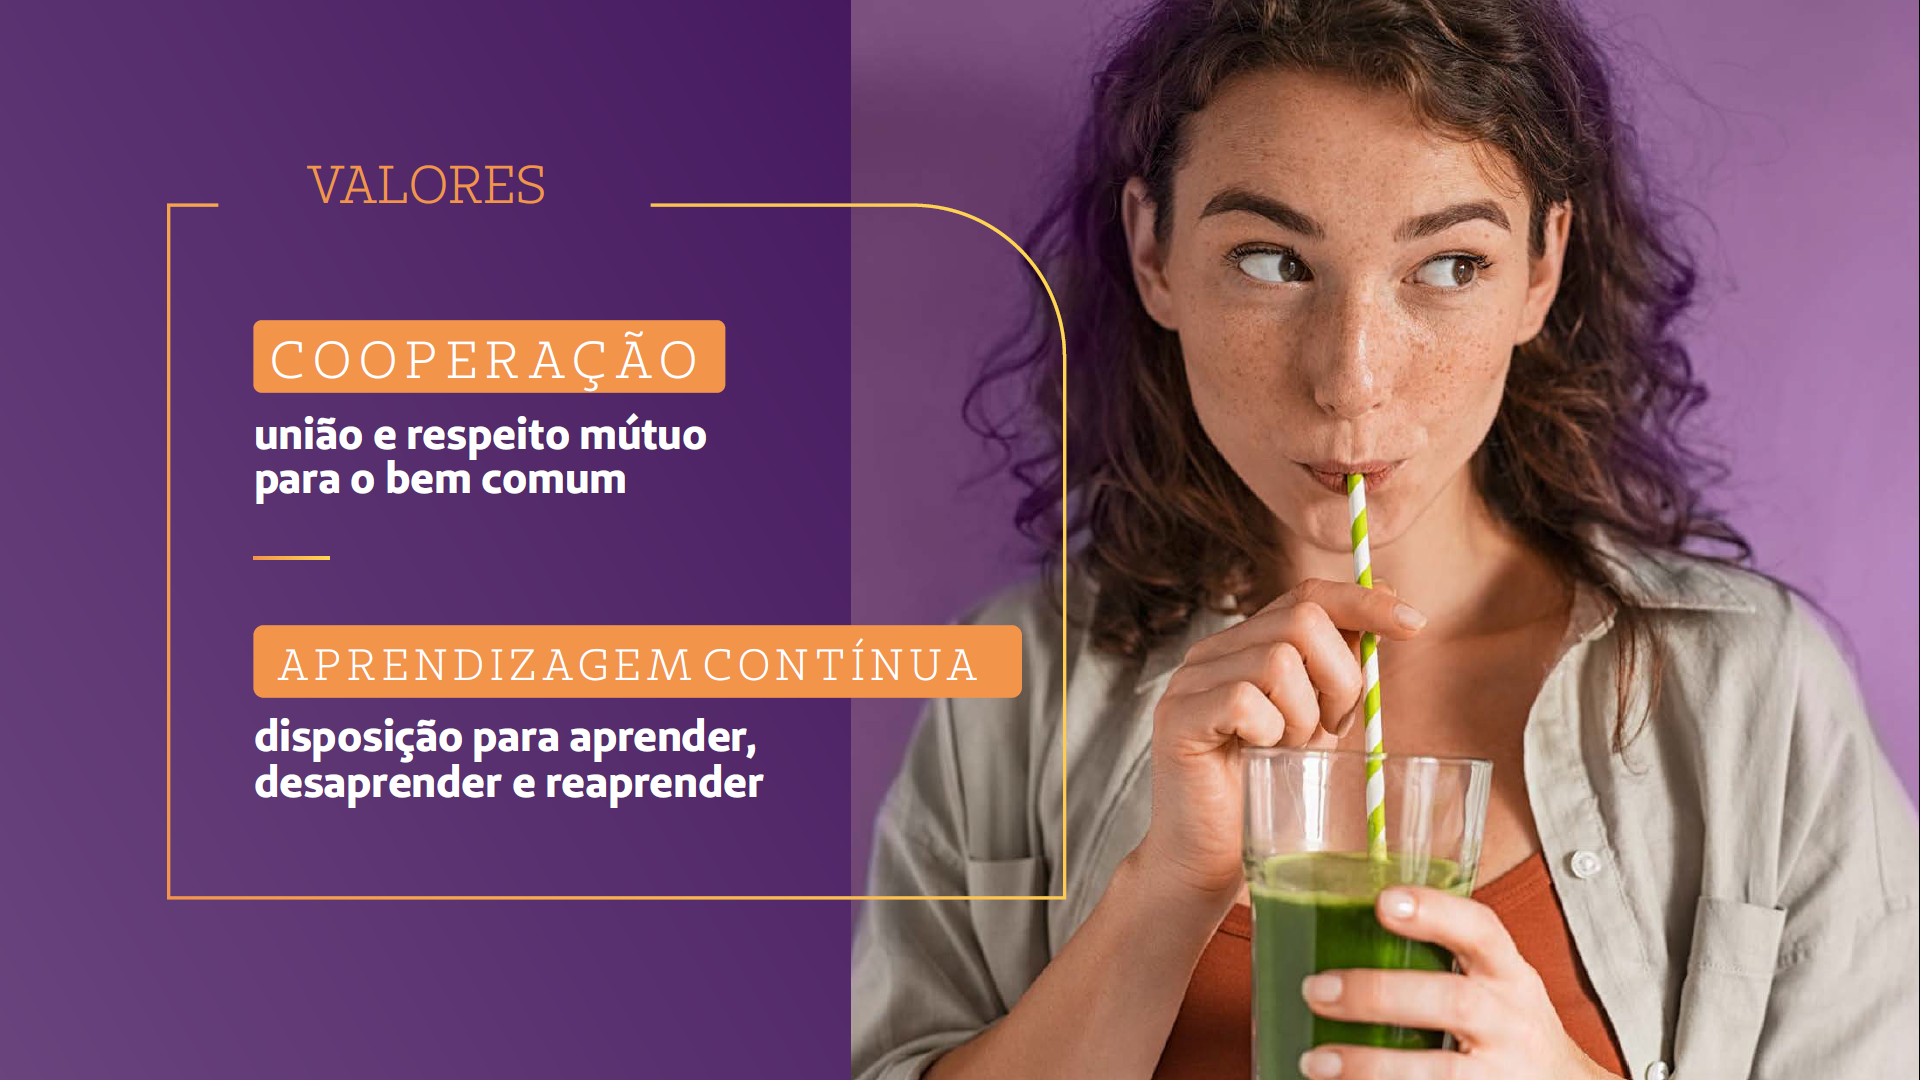 Card mostra imagem de uma garota adolescente tomando suco verde num canudinho. Letreiro cita valores da Unimed: Cooperação e aprendizagem contínua